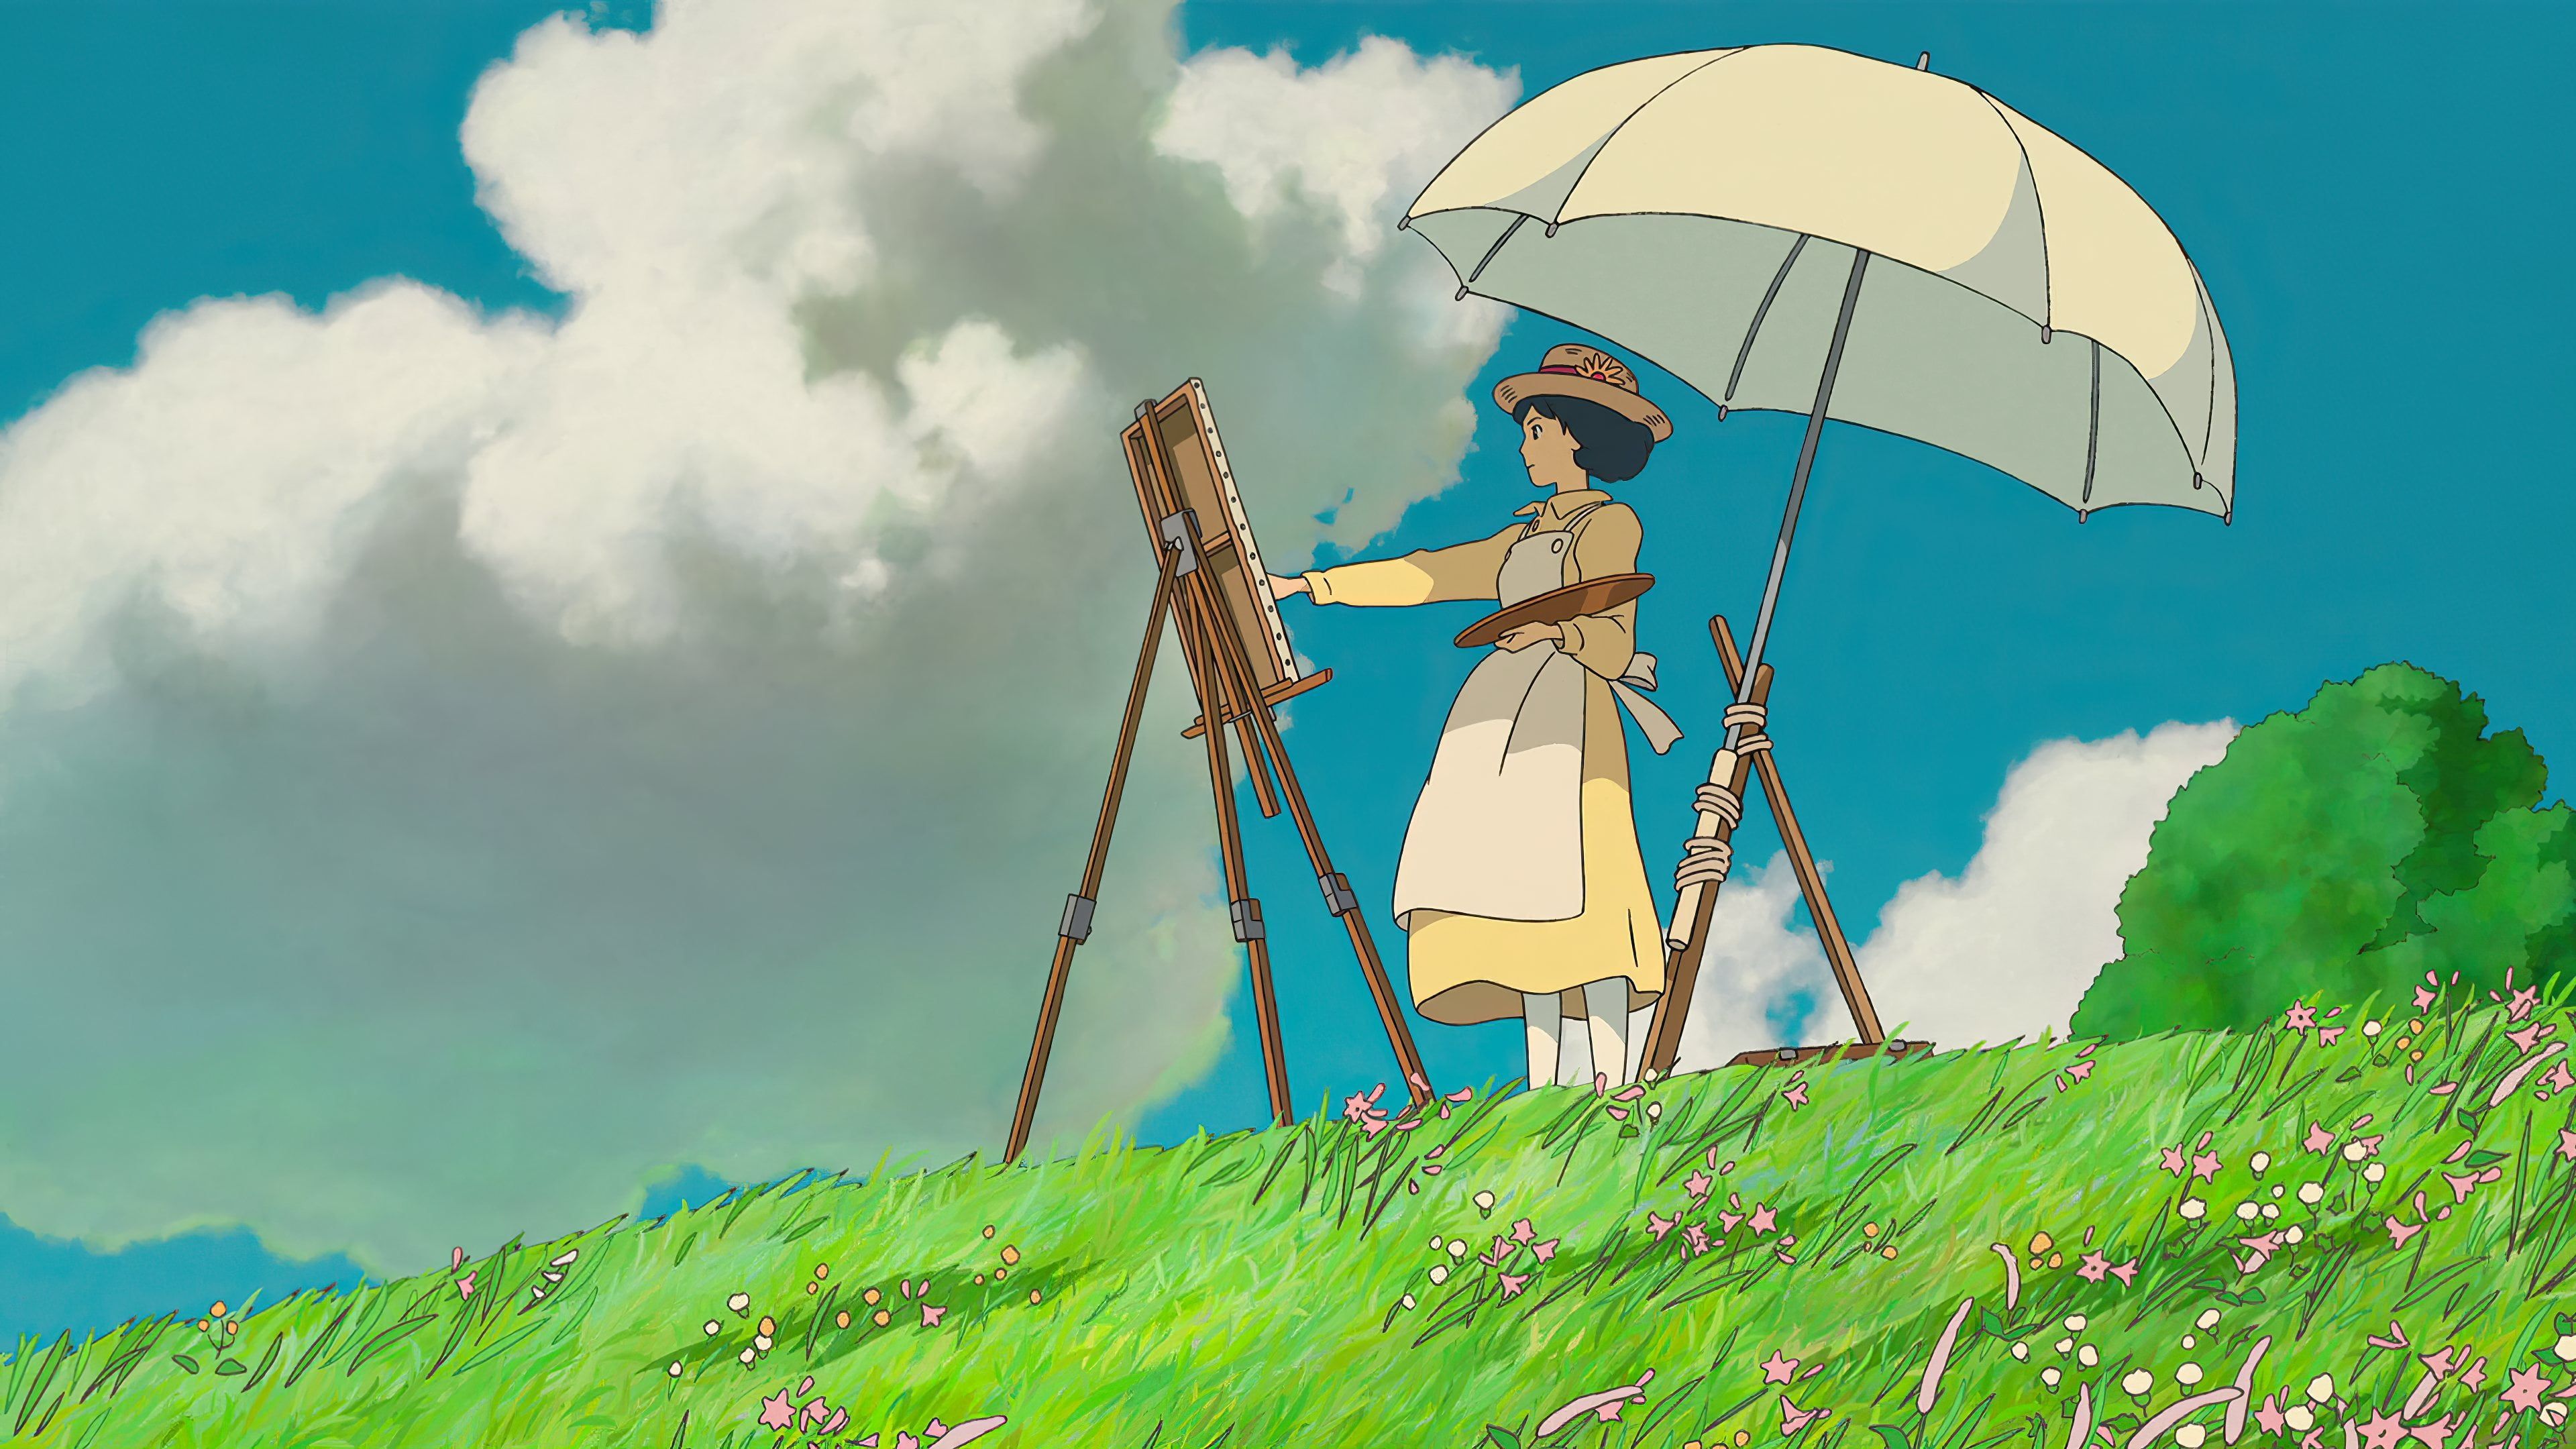 Hình nền máy tính Studio Ghibli là một ánh sáng mới cho bàn làm việc của bạn. Với các nhân vật đáng yêu như Totoro, Chihiro và Haku làm nền, bạn sẽ không thể nào cảm thấy mệt mỏi khi làm việc.